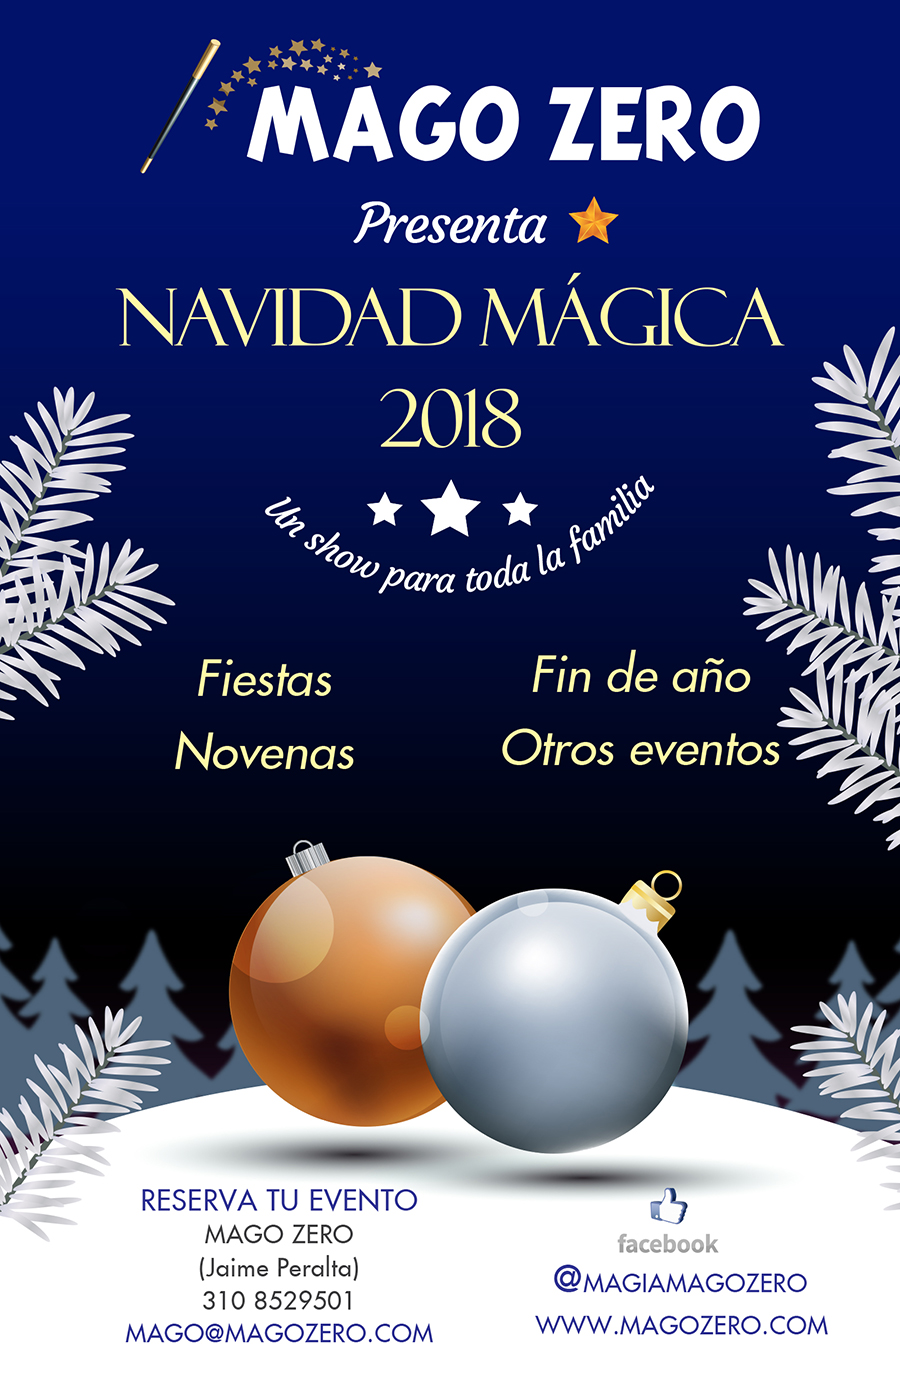 Show de magia navidad 2018